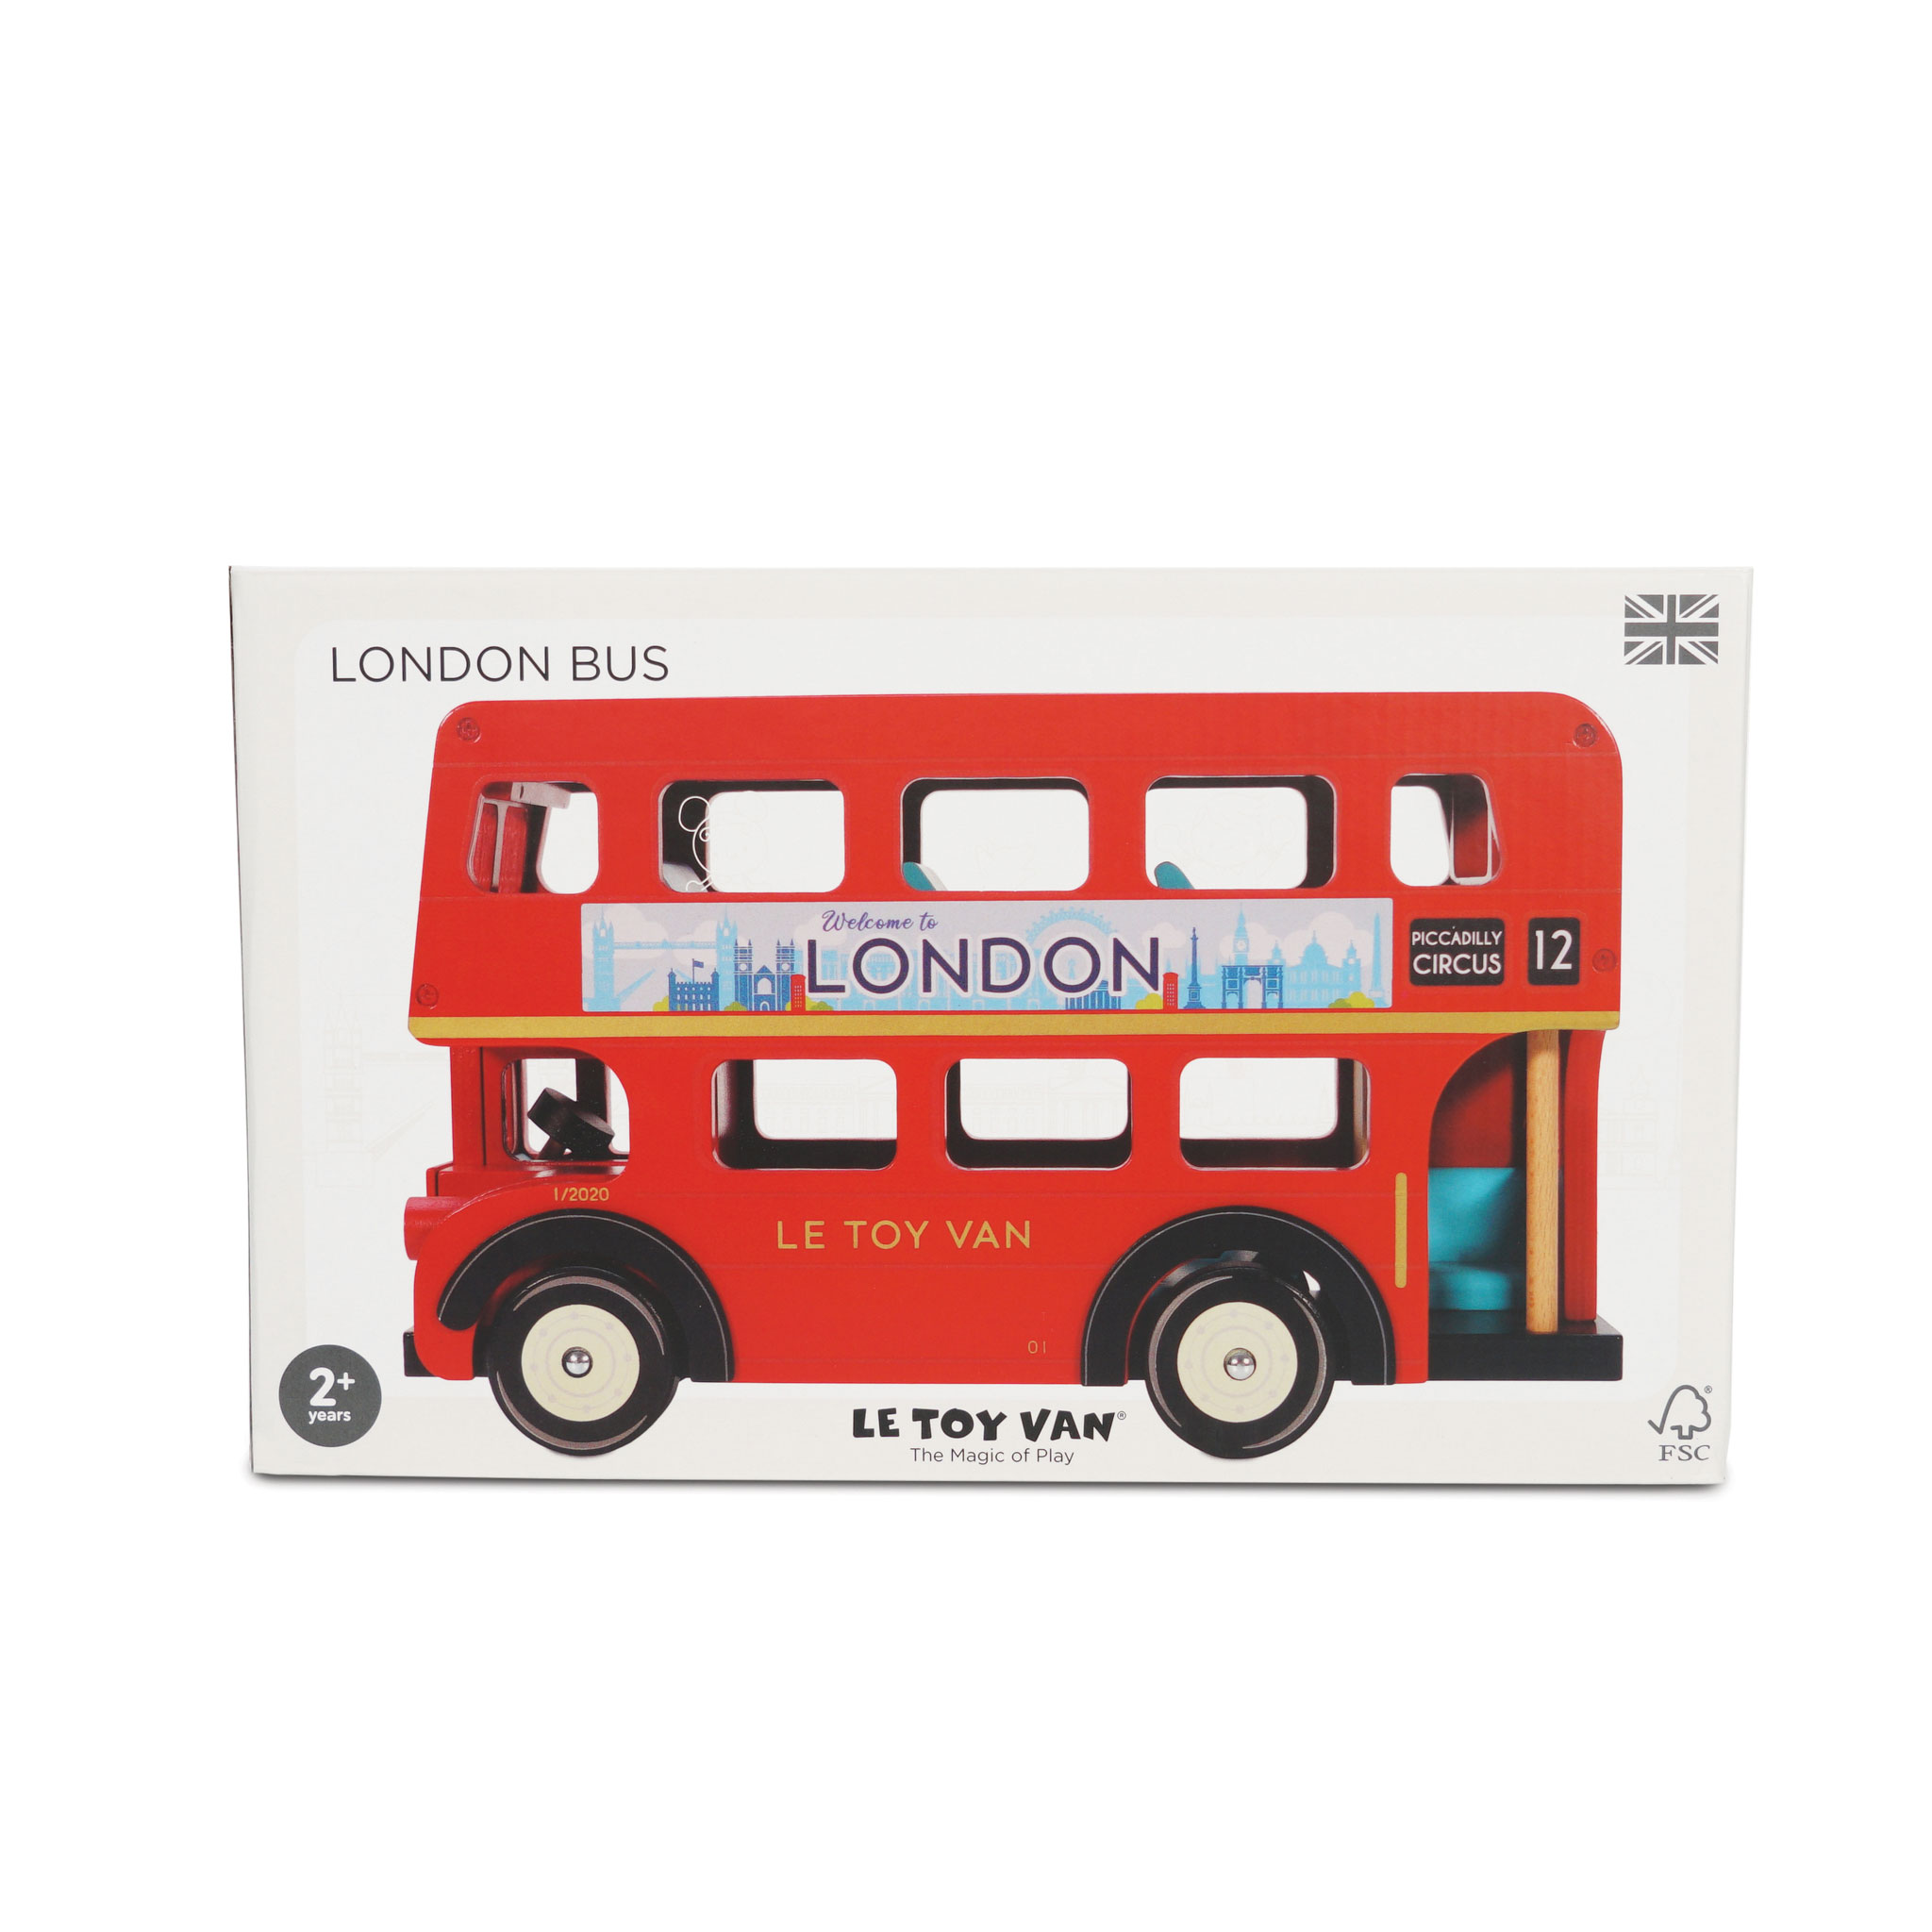 TV469-london-bus-packaging-2